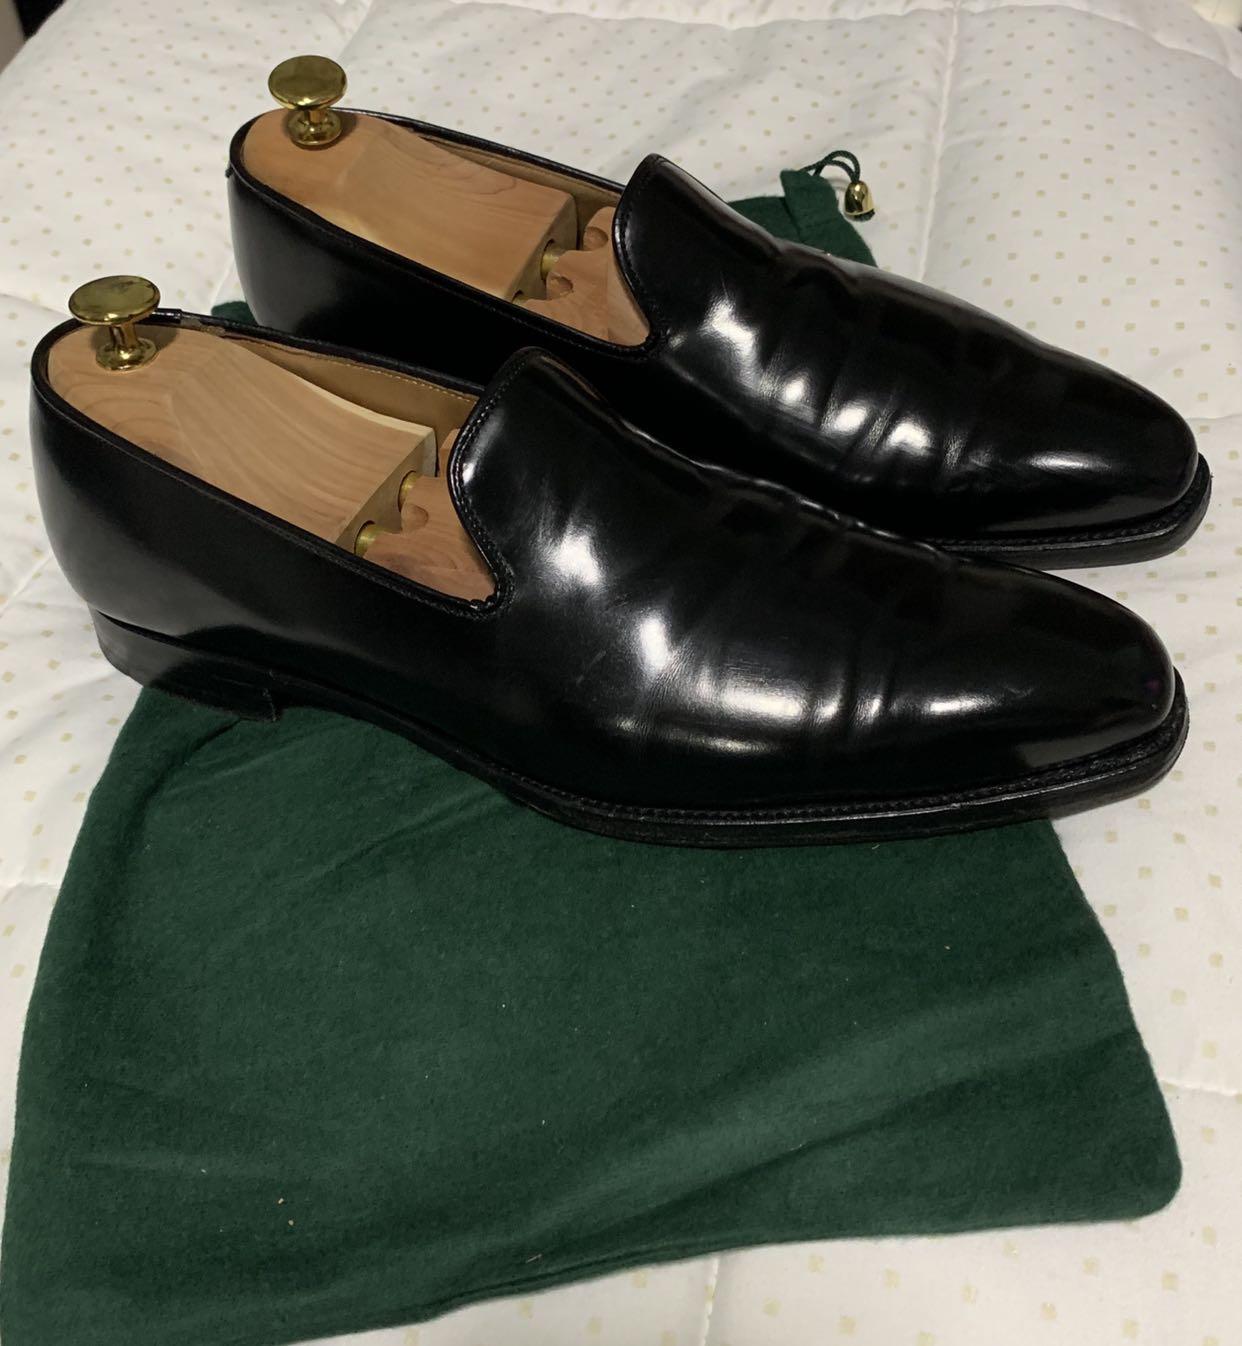 Crockett & Jones Kensington Loafers, Men's Fashion, Footwear